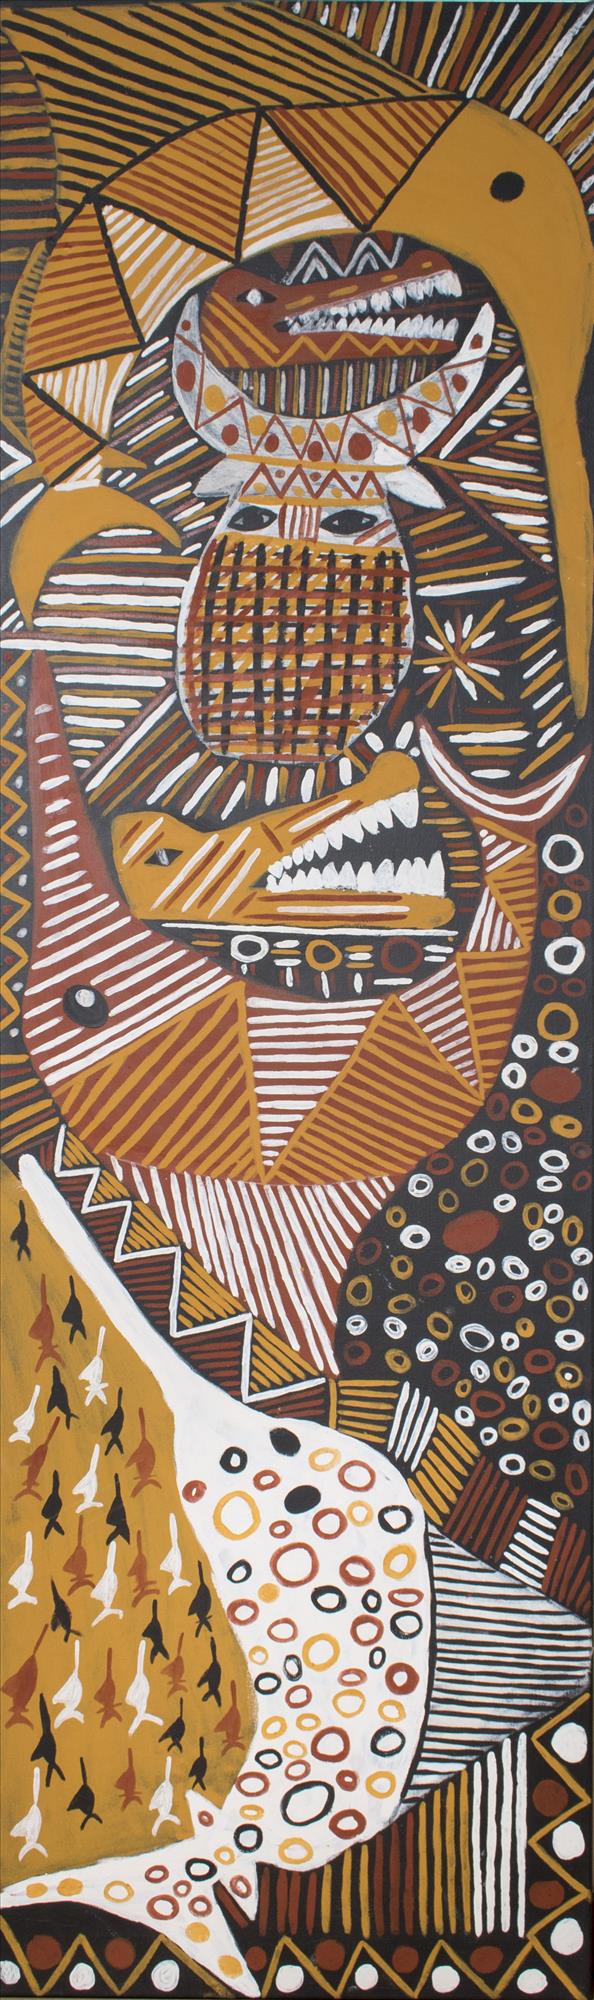 Tiwi Totems - Painting - Chris Black